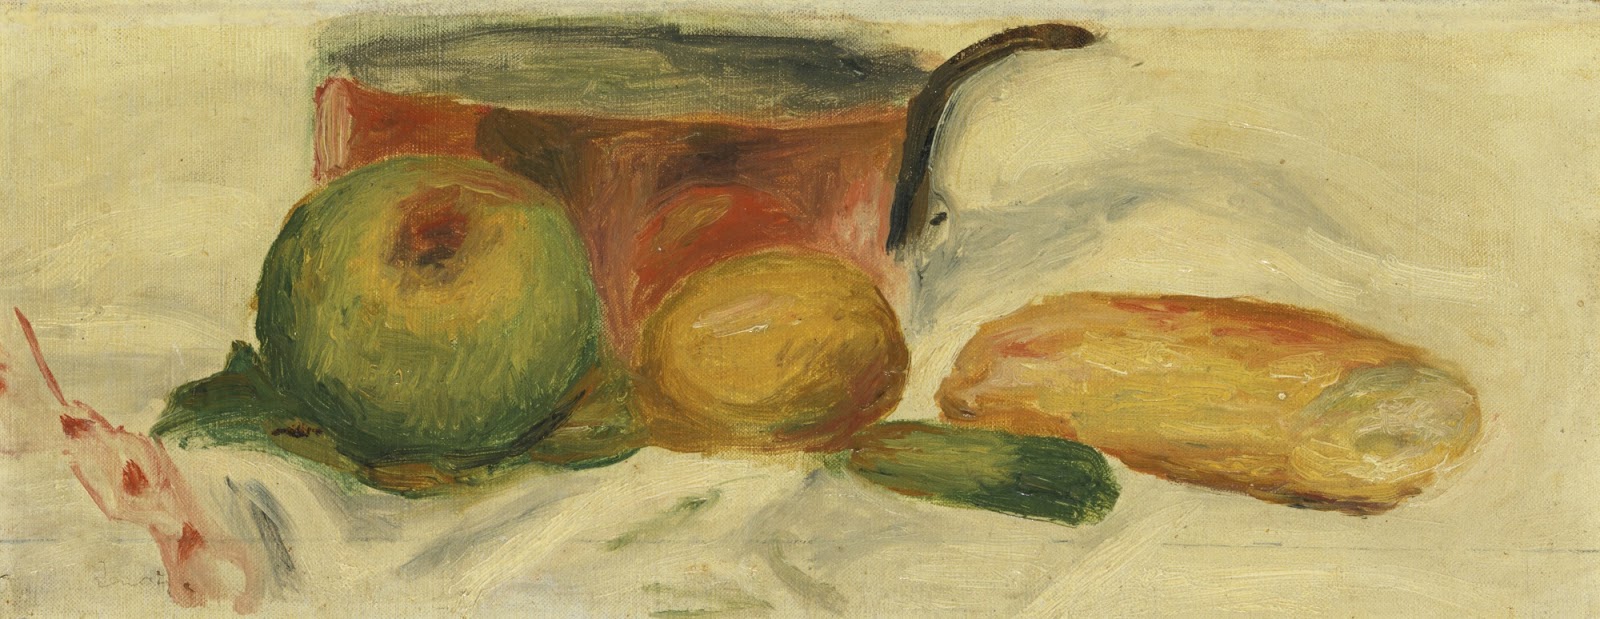 Pierre+Auguste+Renoir-1841-1-19 (611).jpg